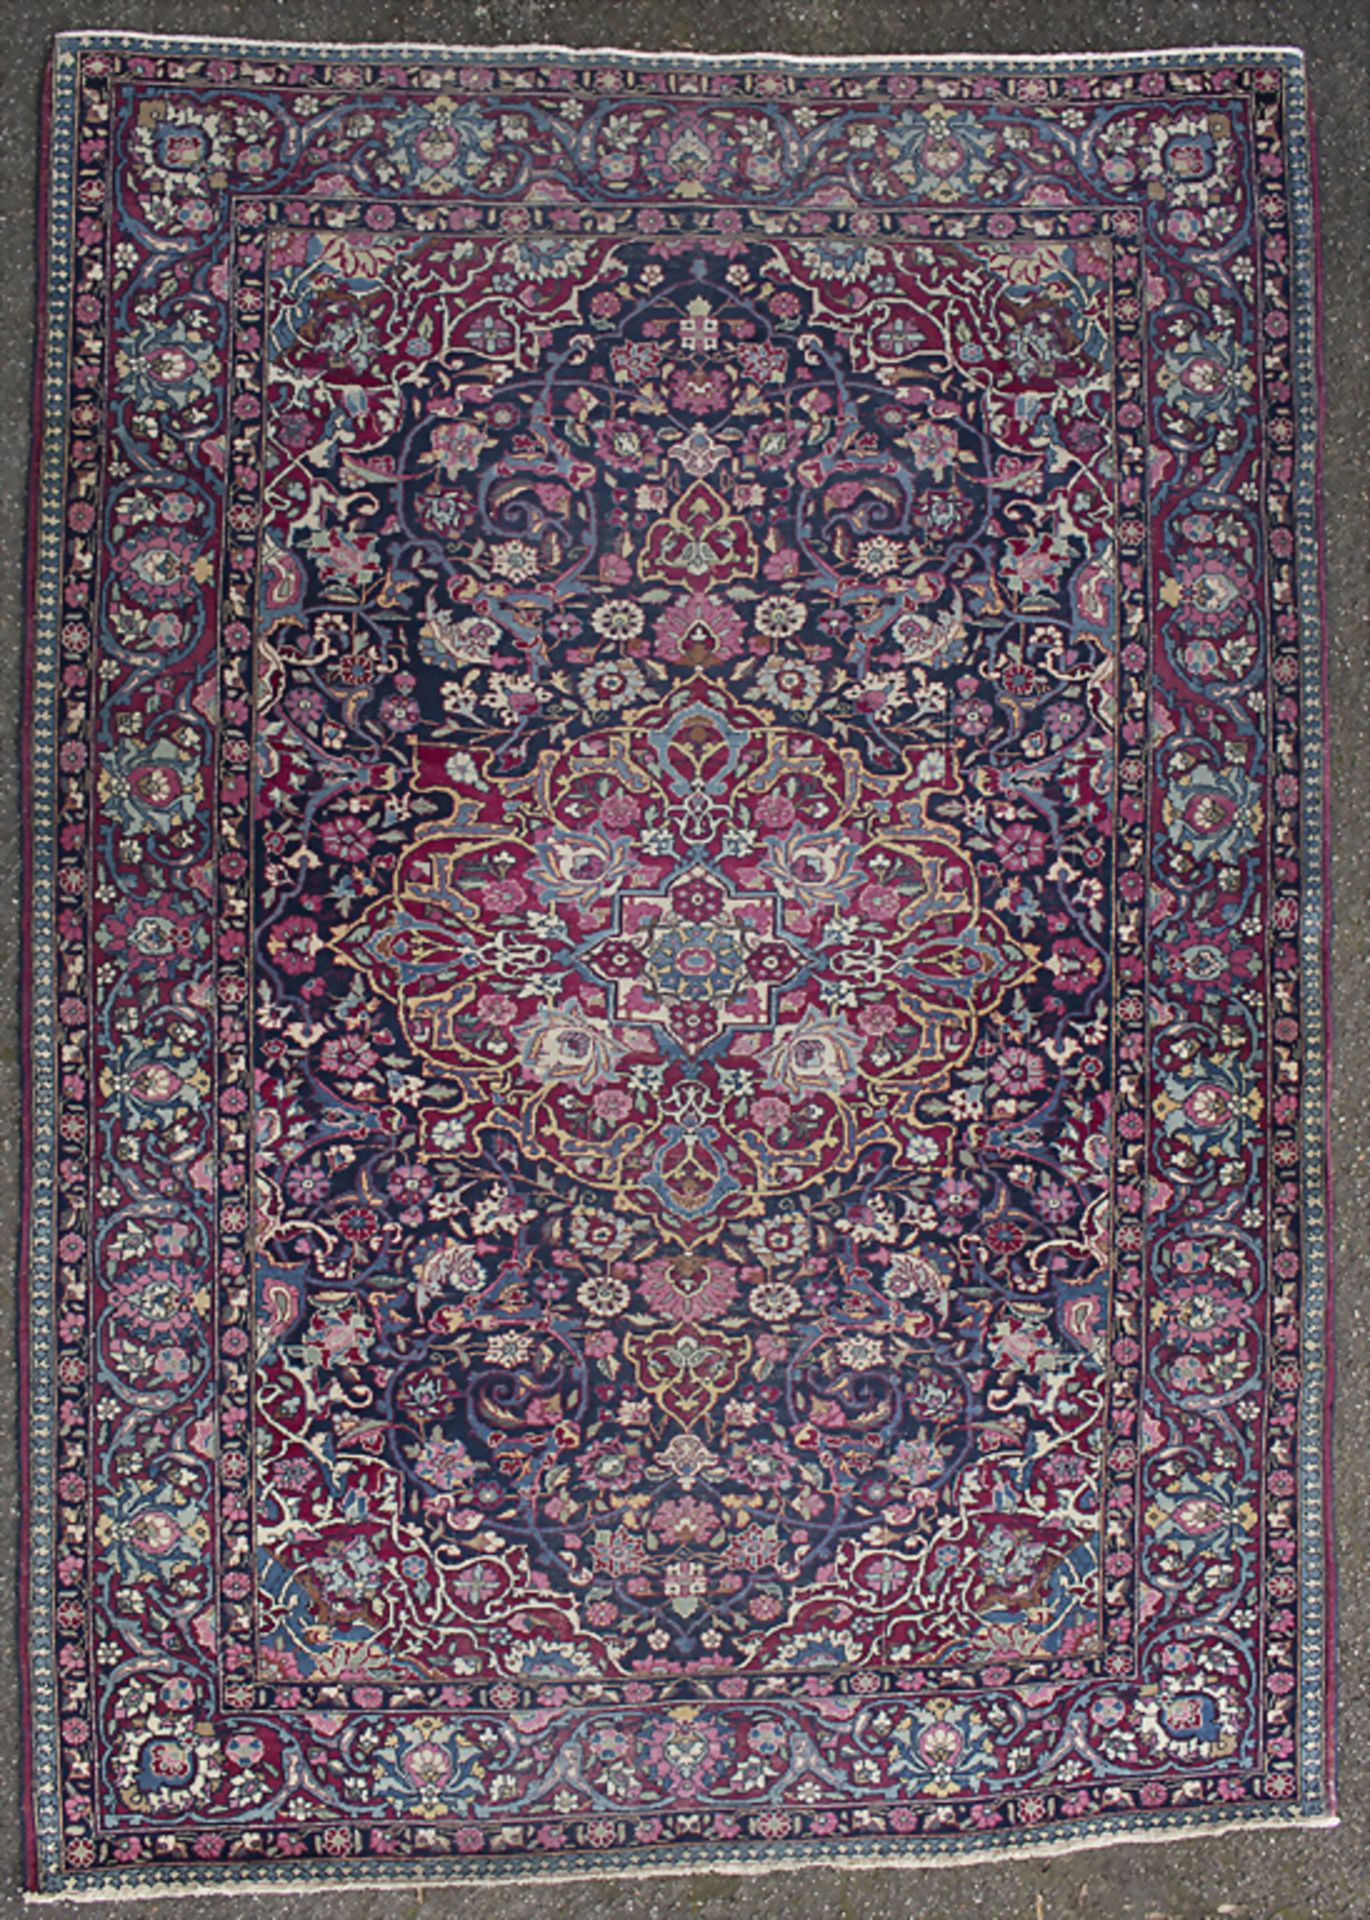 Teppich / A carpet